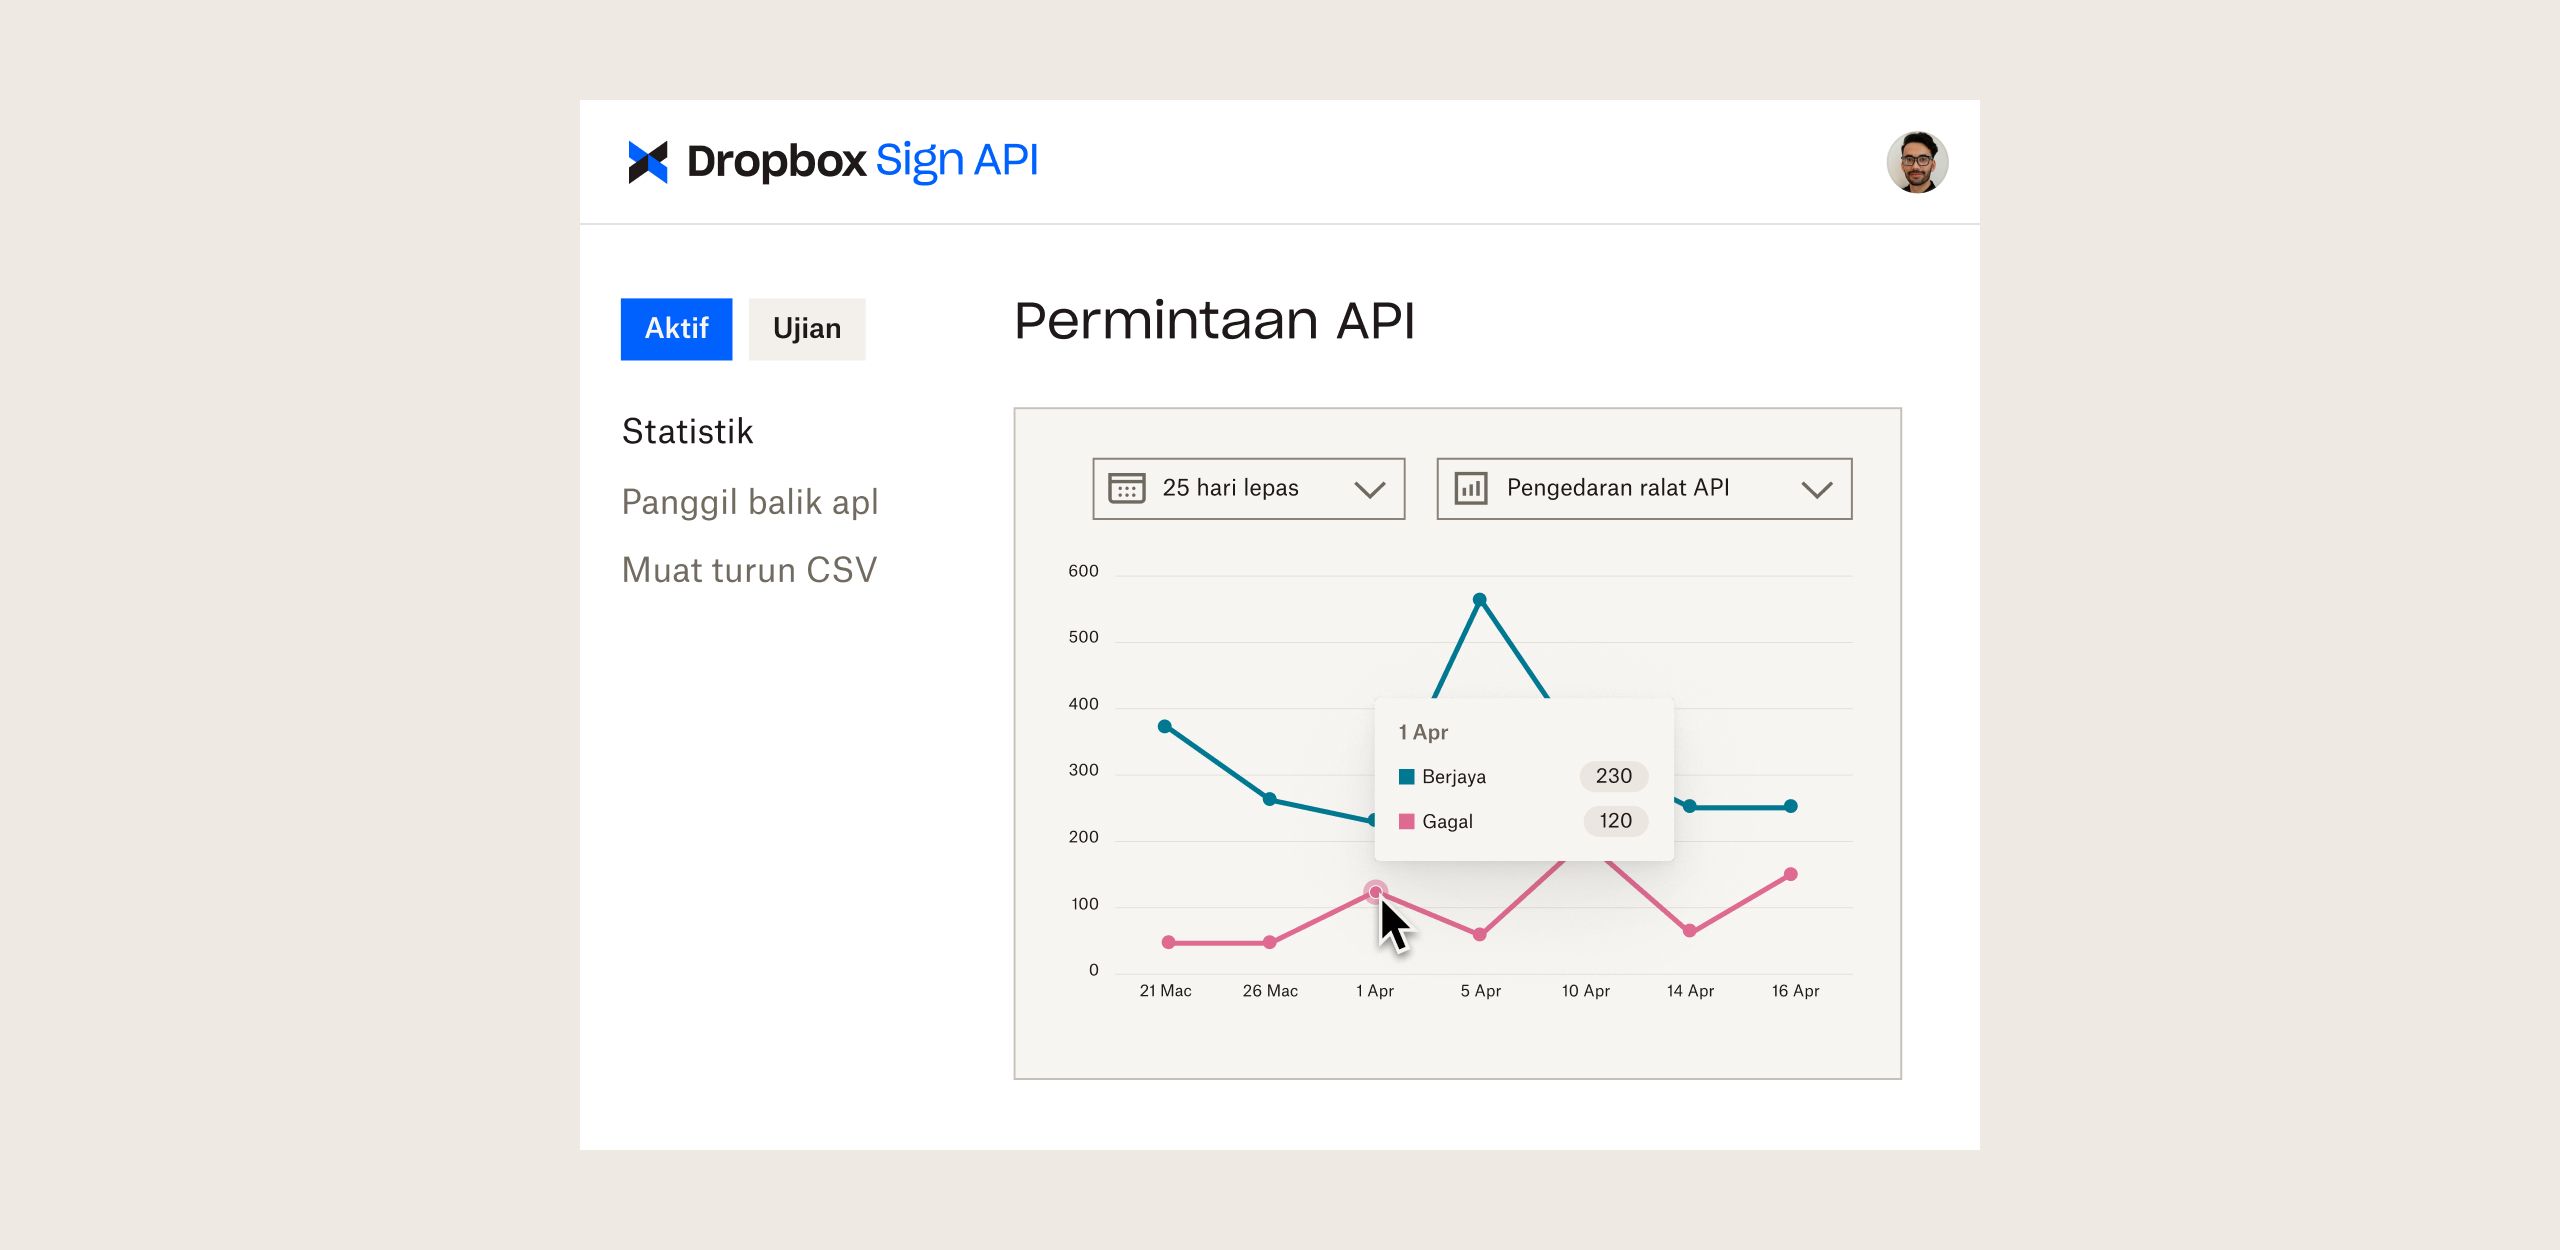 Papan pemuka Dropbox Sign API dengan graf yang menunjukkan permintaan API dari semasa ke semasa